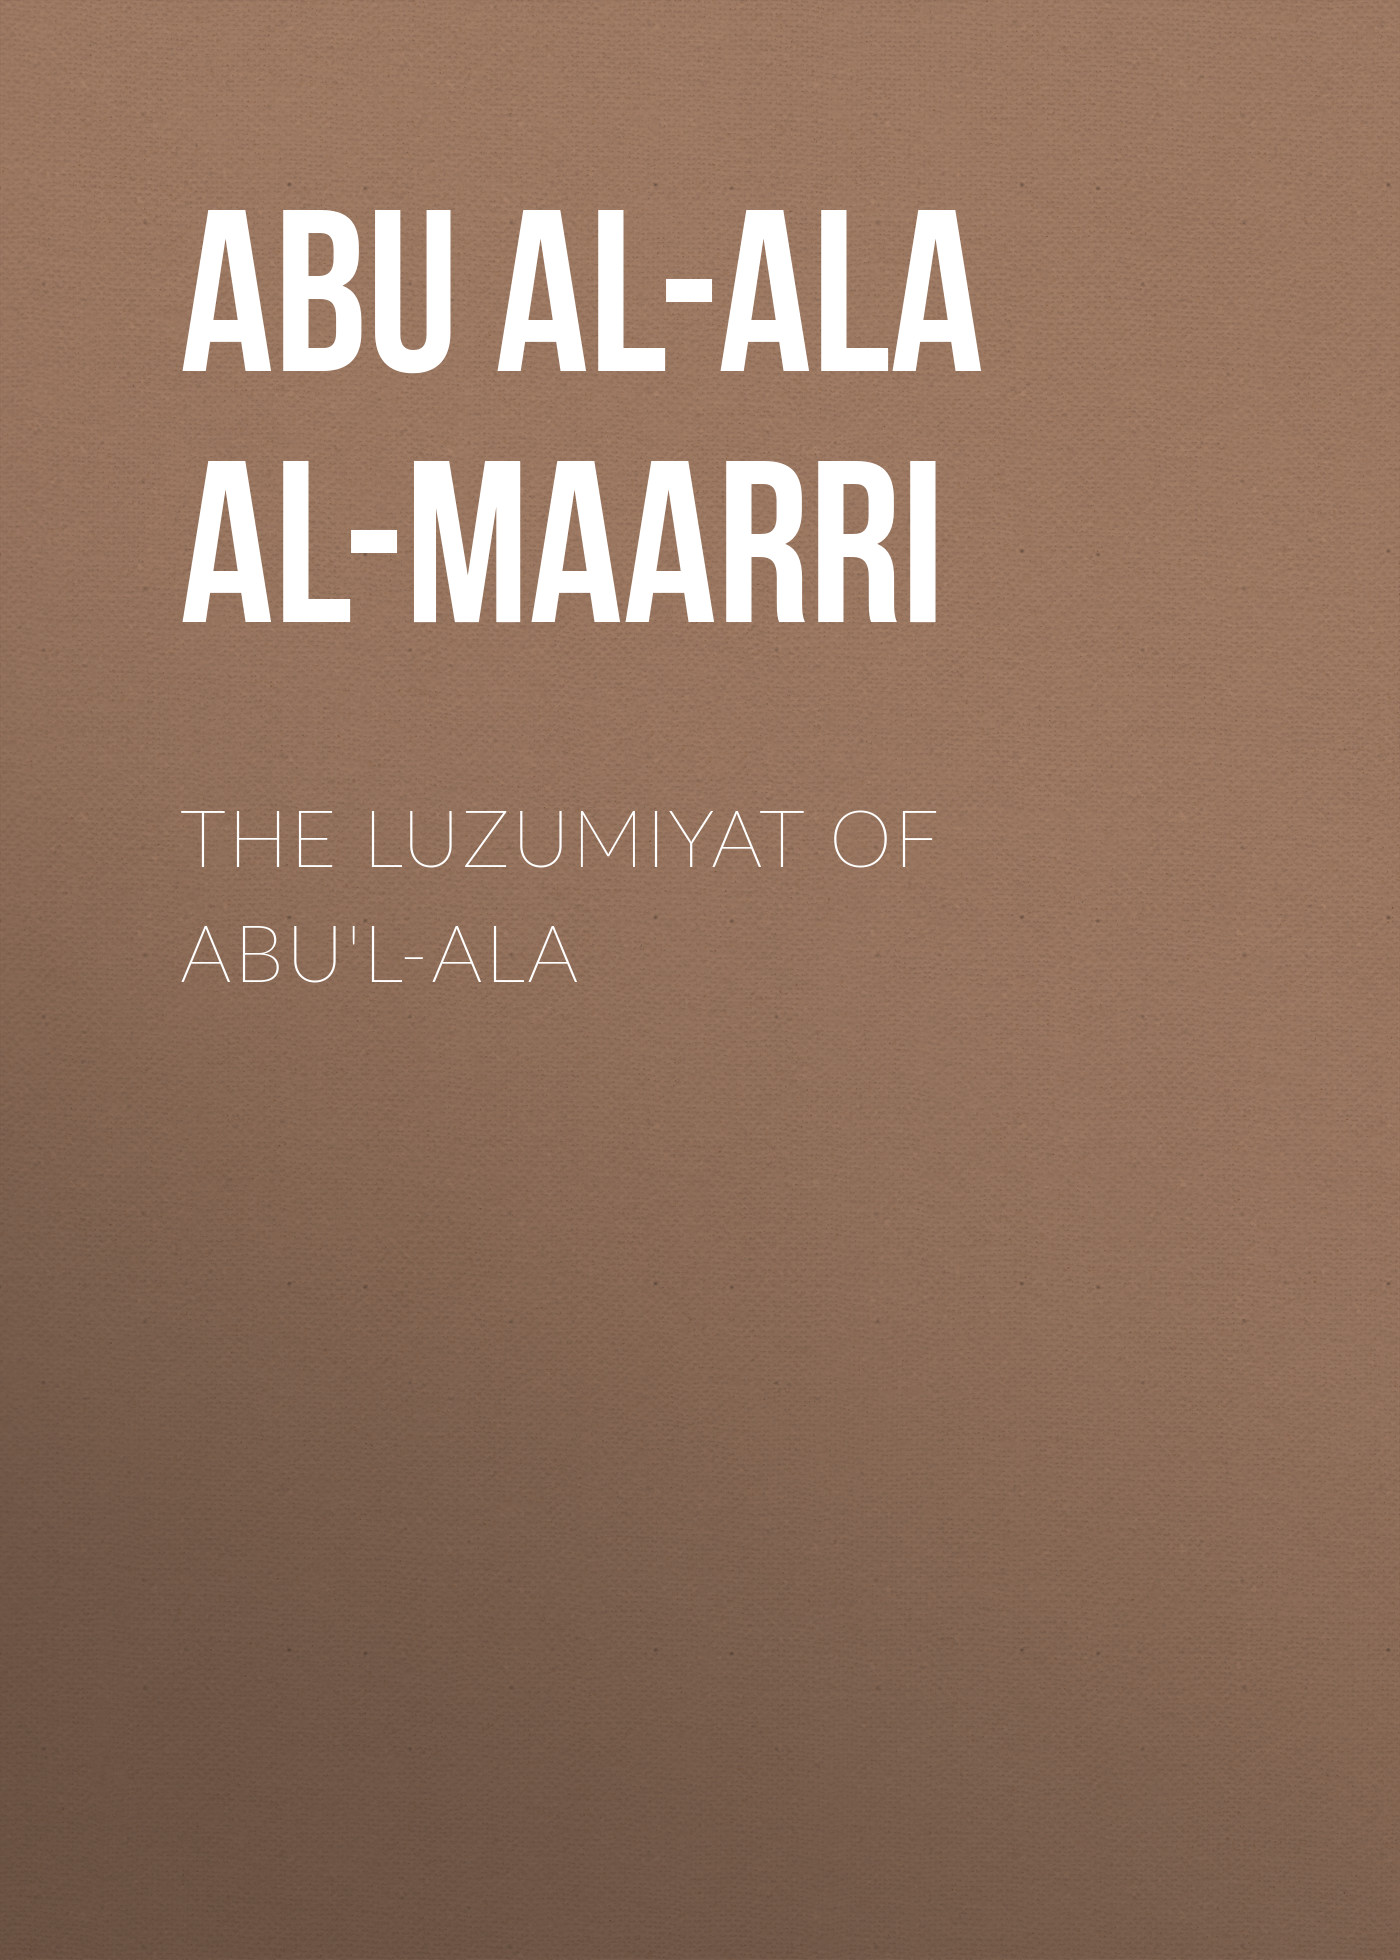 Abu al-Ala al-Maarri The Luzumiyat of Abu'l-Ala